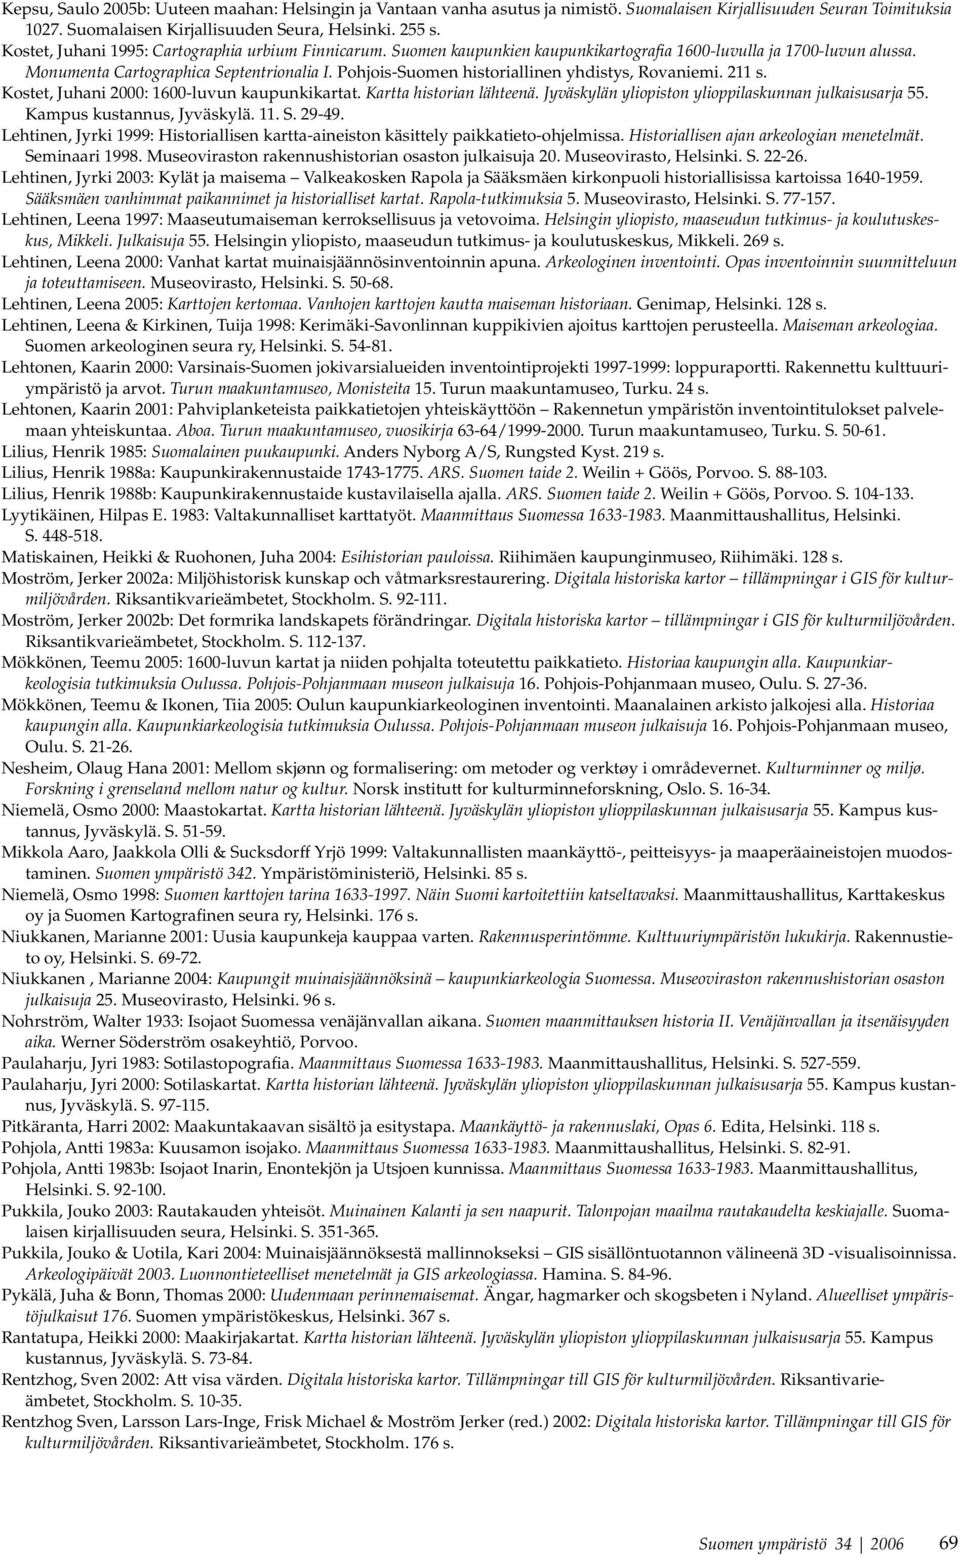 Pohjois-Suomen historiallinen yhdistys, Rovaniemi. 211 s. Kostet, Juhani 2000: 1600-luvun kaupunkikartat. Kartta historian lähteenä. Jyväskylän yliopiston ylioppilaskunnan julkaisusarja 55.